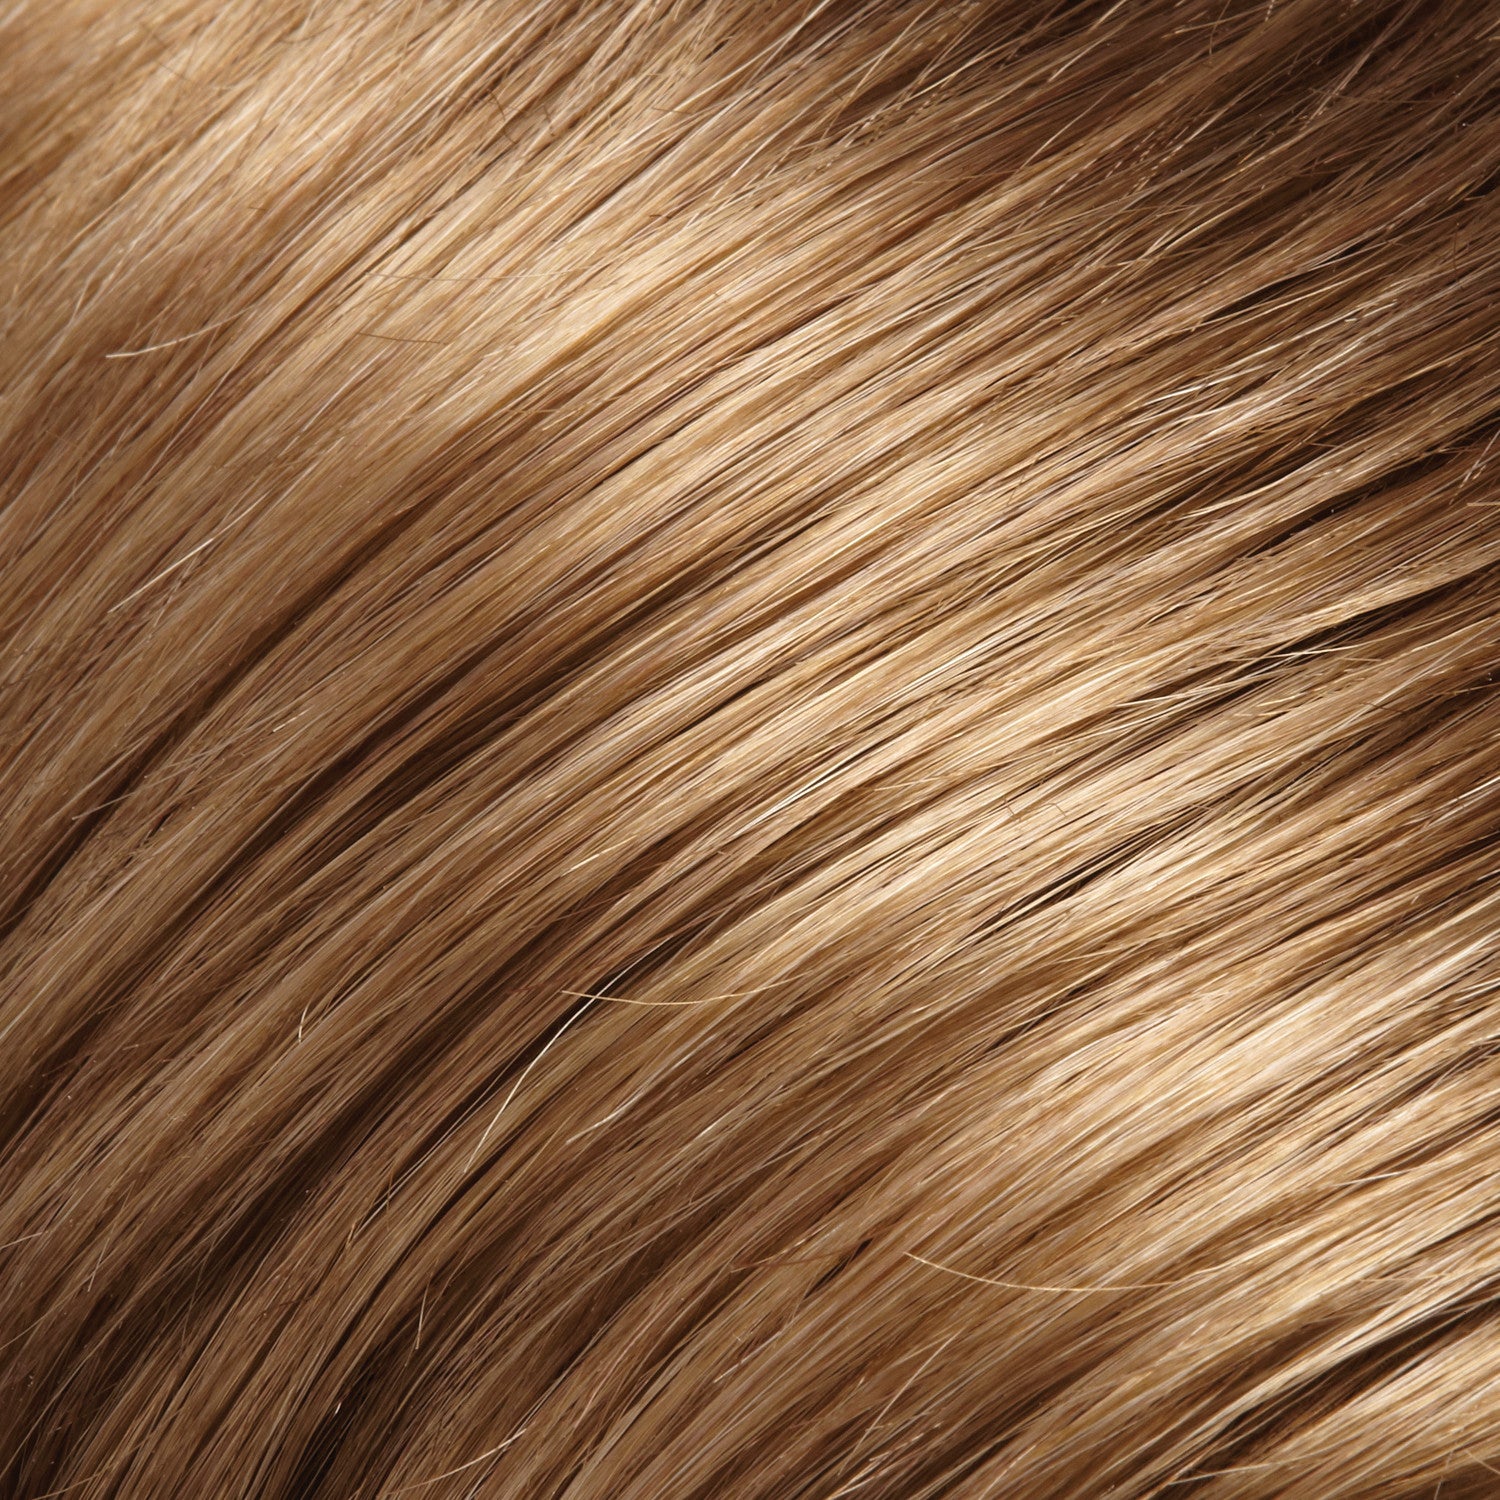 Голд Браун цвет волос. Golden Brown цвет волос. Light Golden Brown цвет волос. Волосы теплого оттенка пралине. Лайт браун